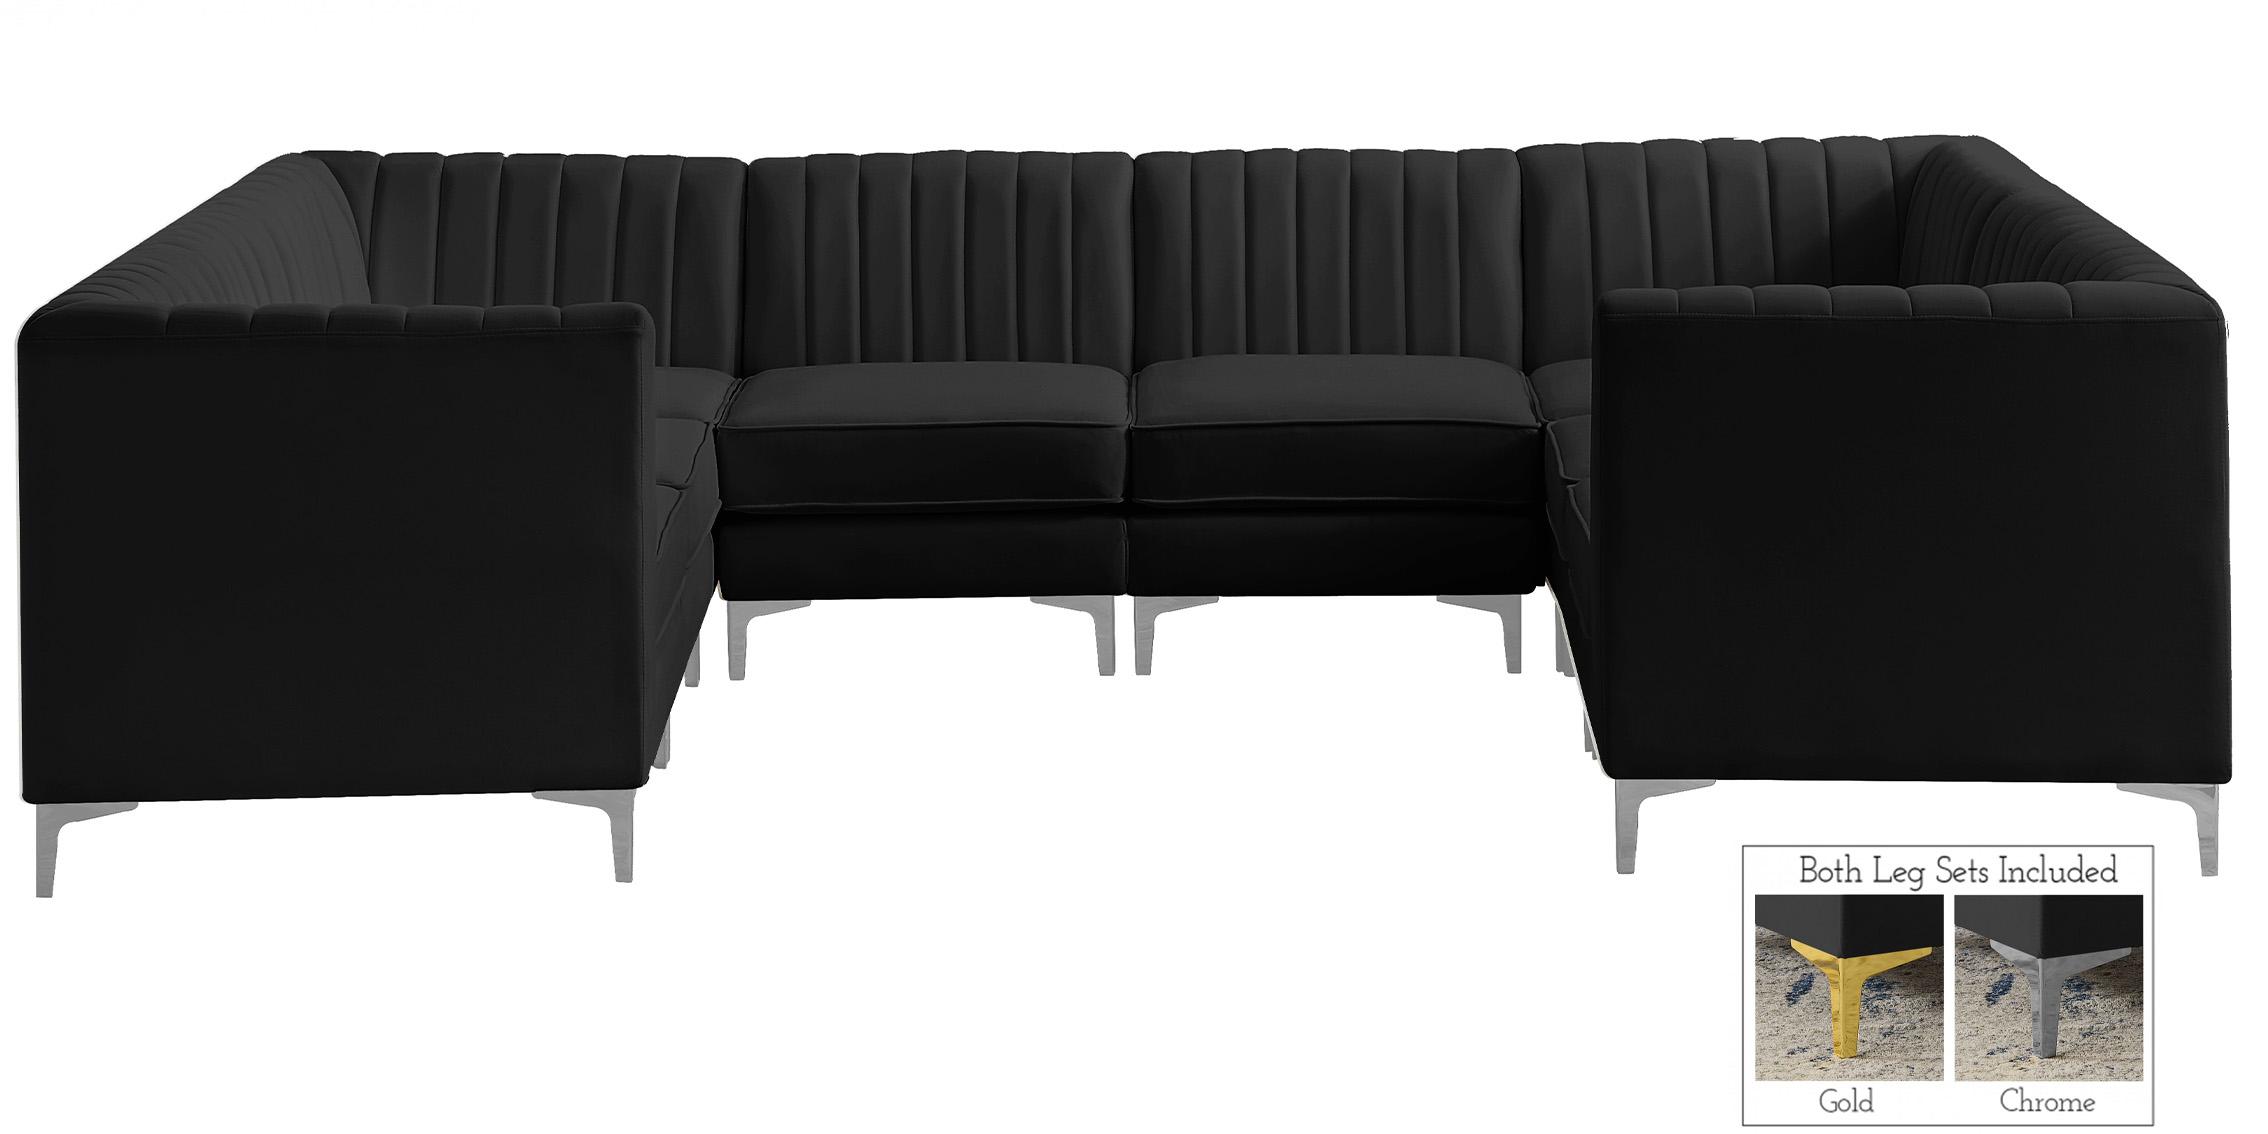 

    
Meridian Furniture ALINA 604Black-Sec8B Modular Sectional Sofa Black 604Black-Sec8B
